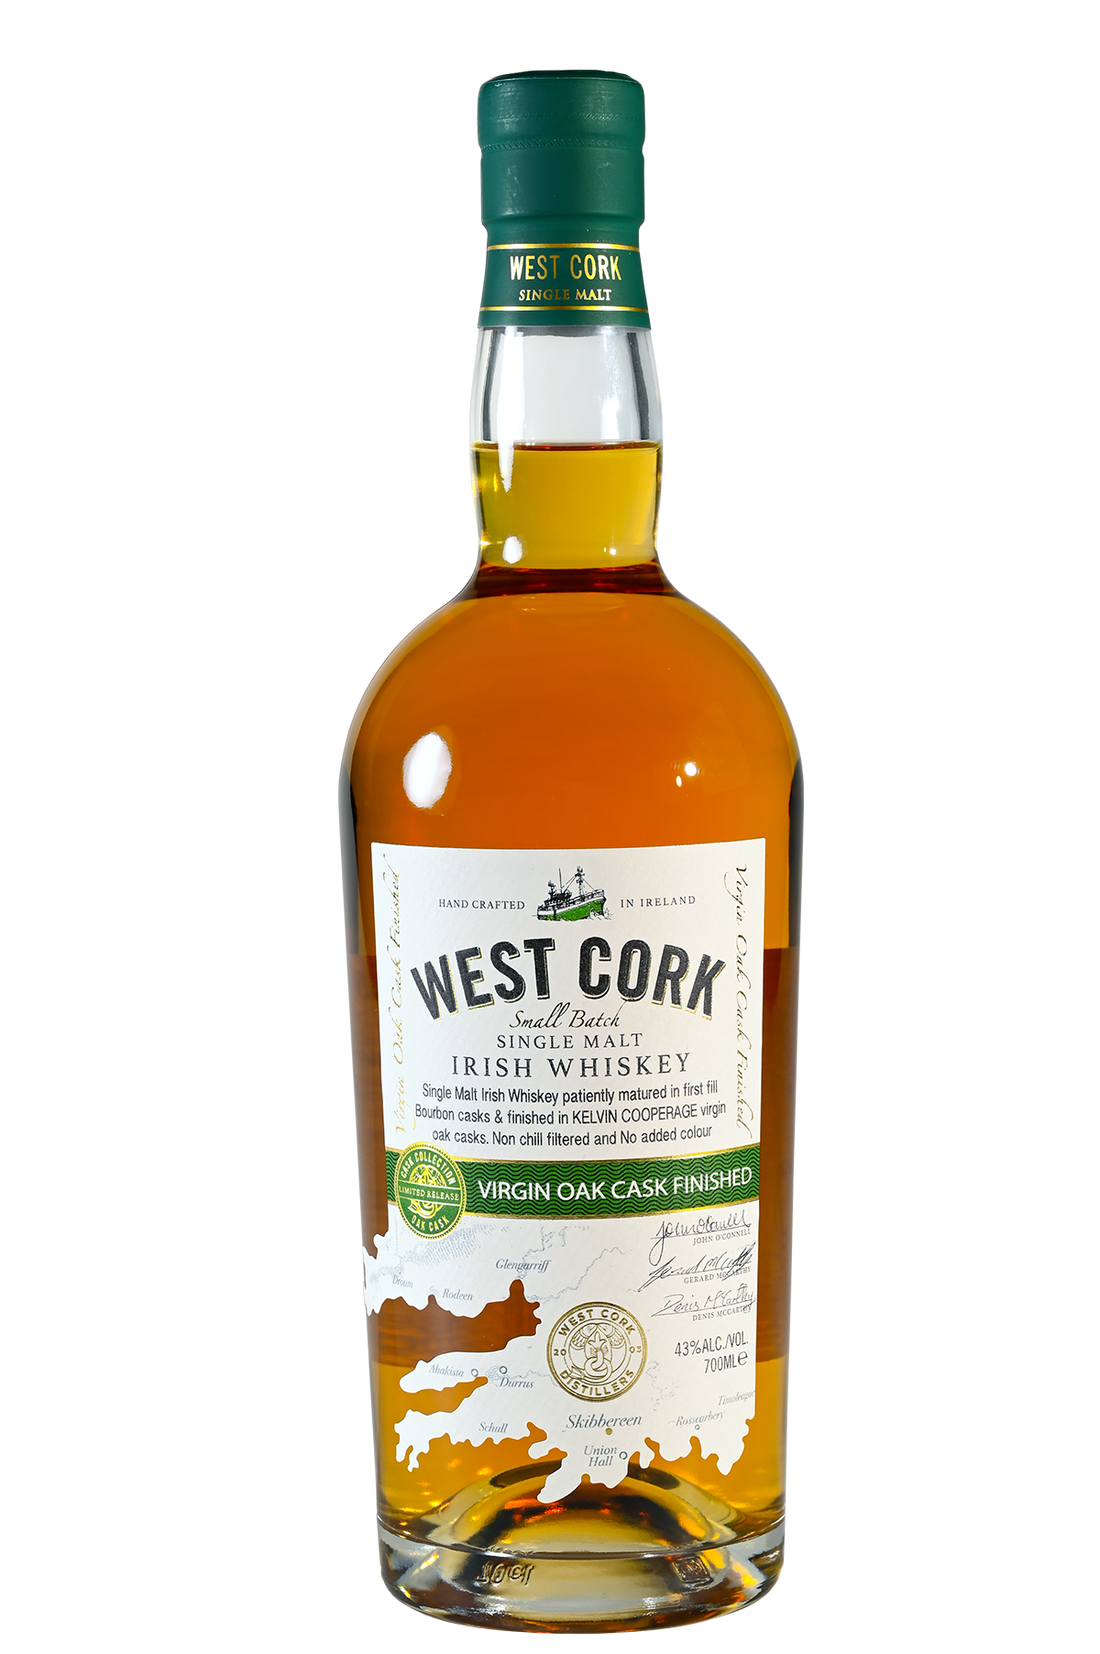 Virgin Oak Cask (Single Malt Irish Whiskey)